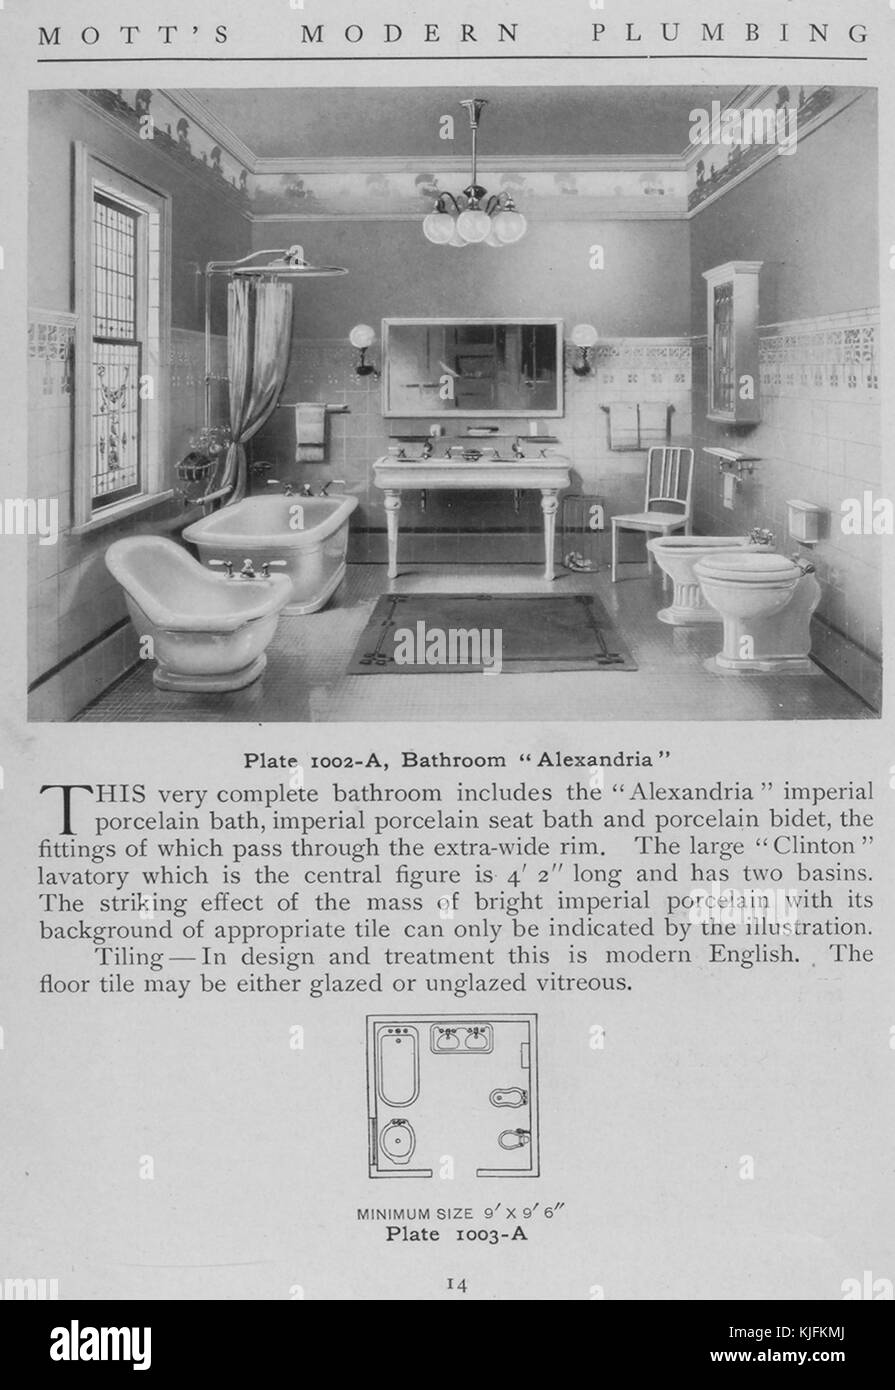 Badezimmer, Alexandria, 1911. Von der New York Public Library. Diese Platte ist von motts modern Plumbing, ein Katalog mit verschiedenen Stilen von Badarmaturen. Stockfoto